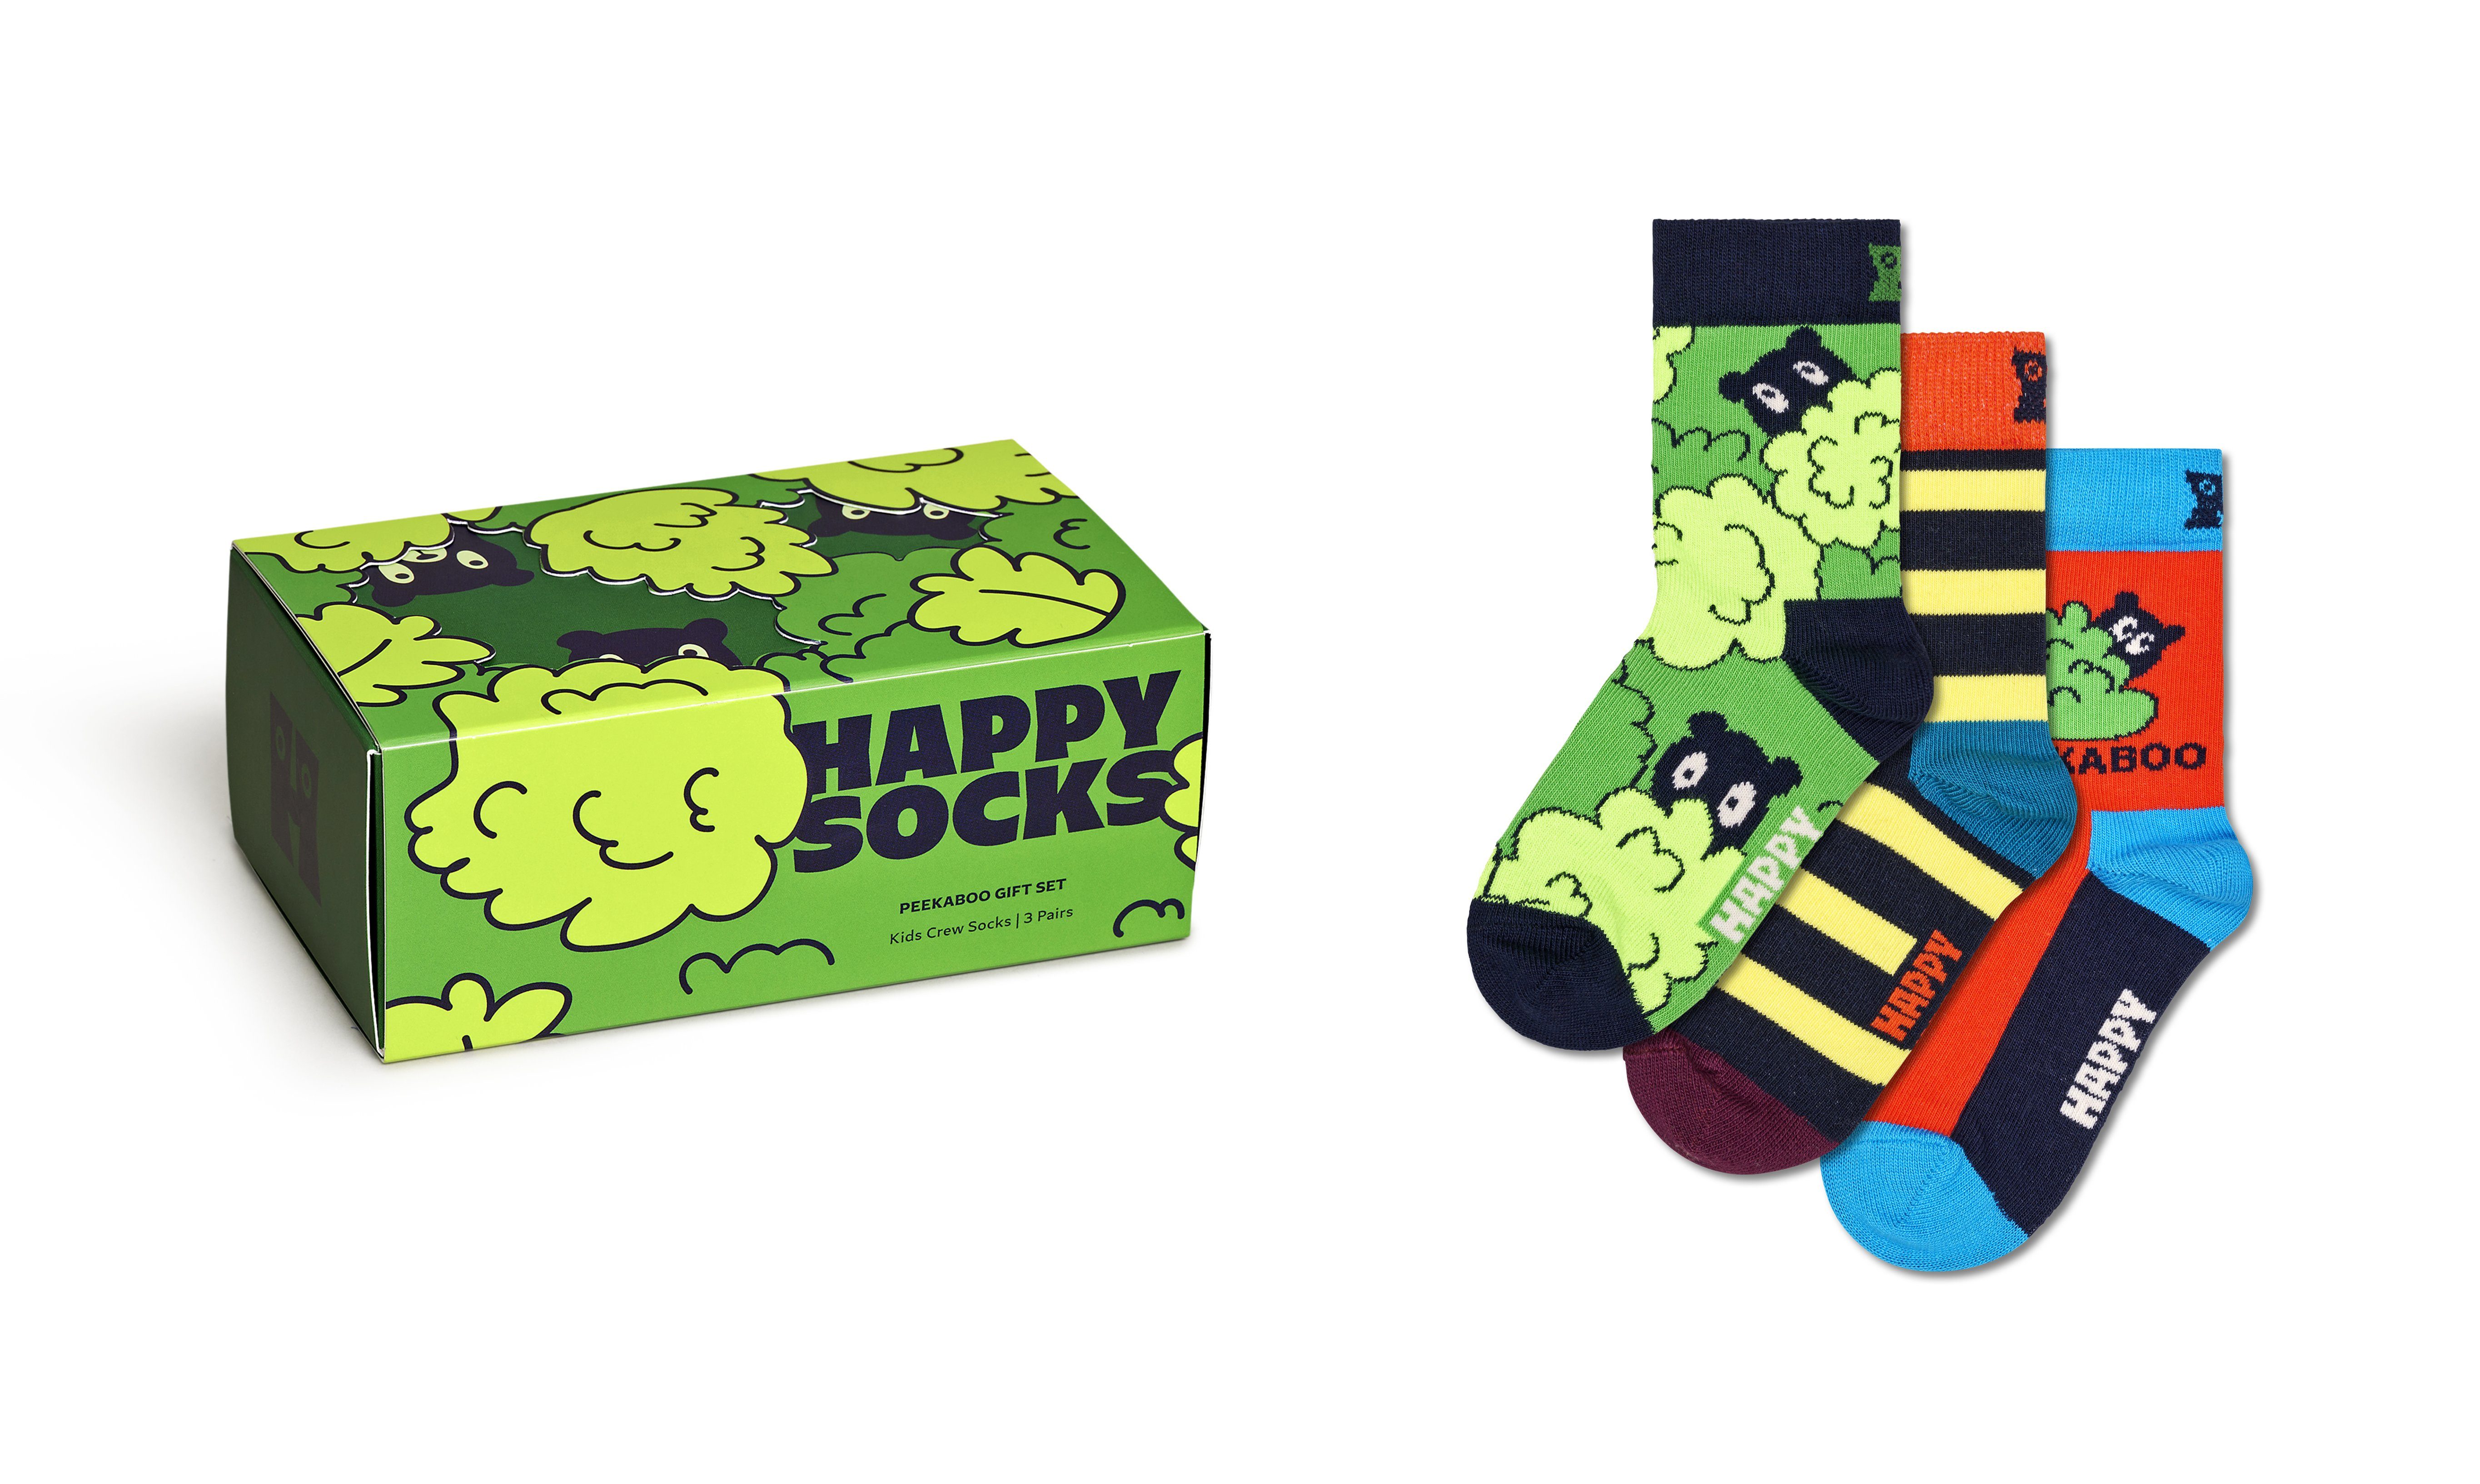 (3-Paar) Happy Gift Peekaboo Set Socken Peek-A-Boo Socks